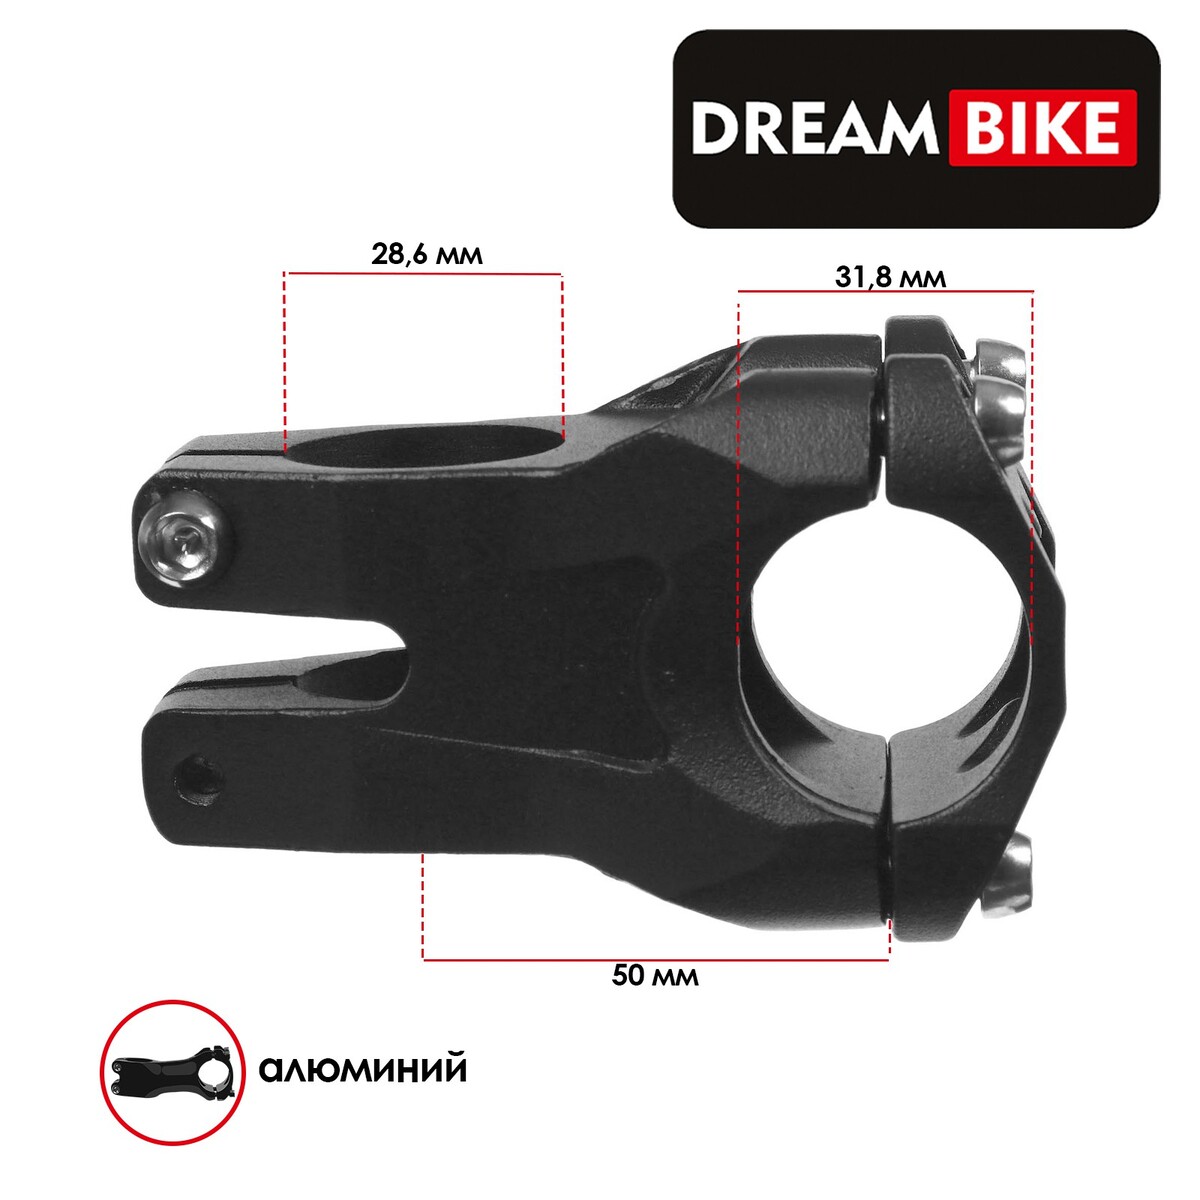 Вынос руля dream bike 1-1/8 Dream Bike 011775935 - фото 1